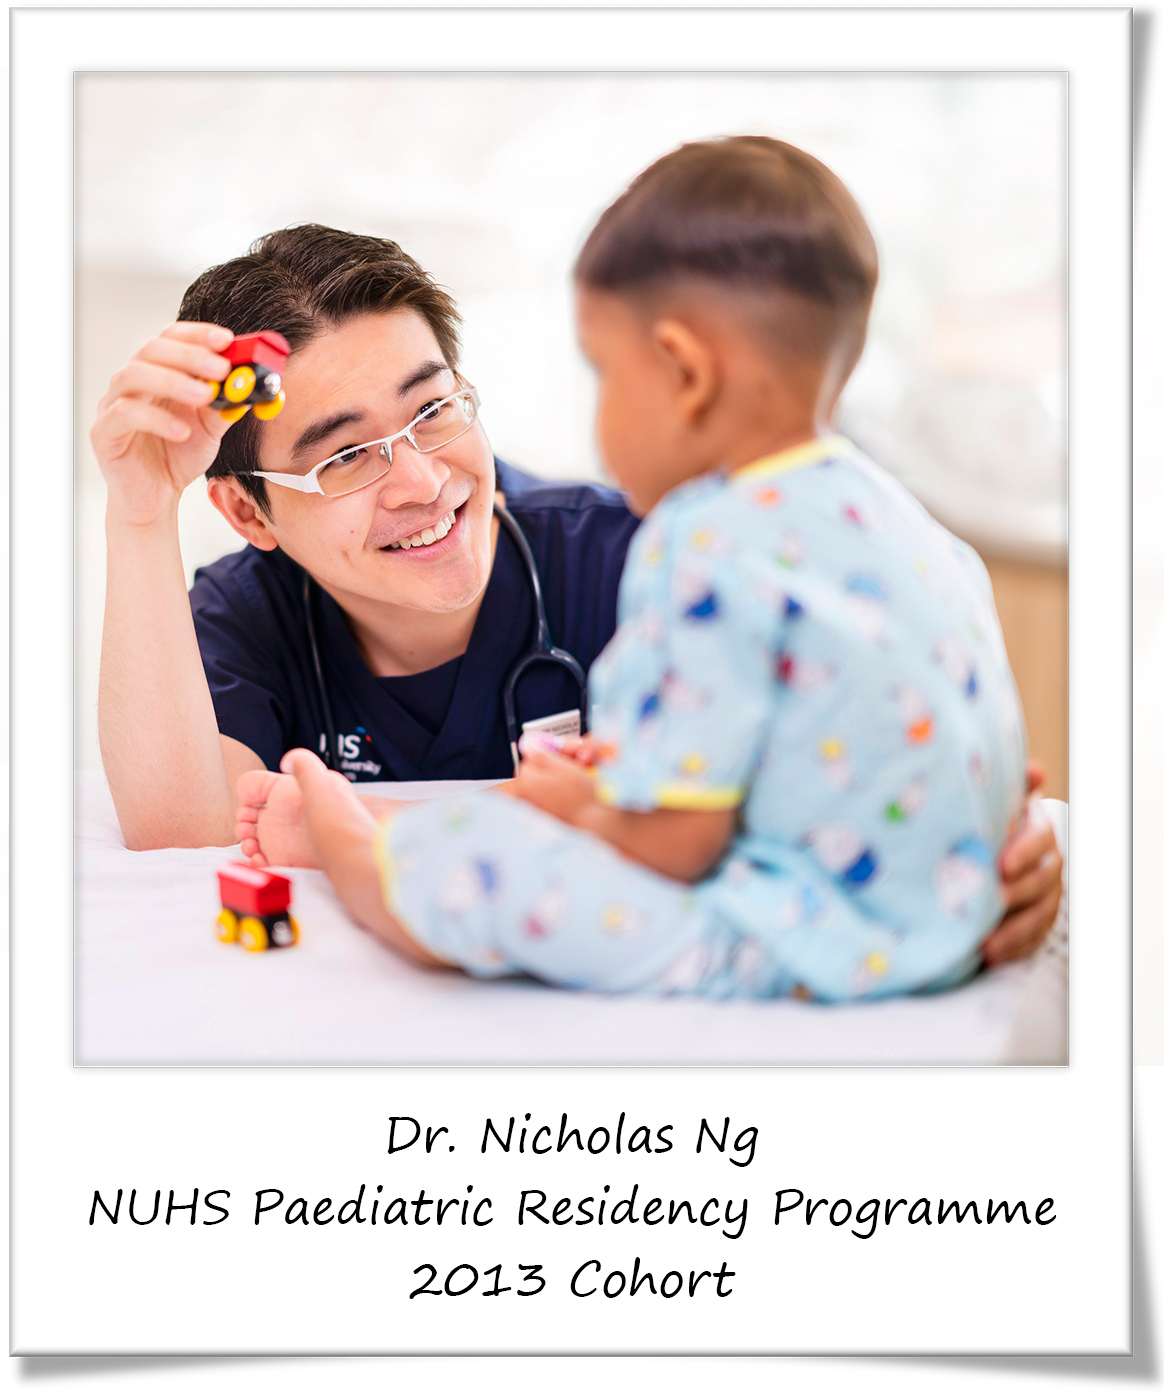 Nicholas Ng, NUHS Paediatric Residency Programme